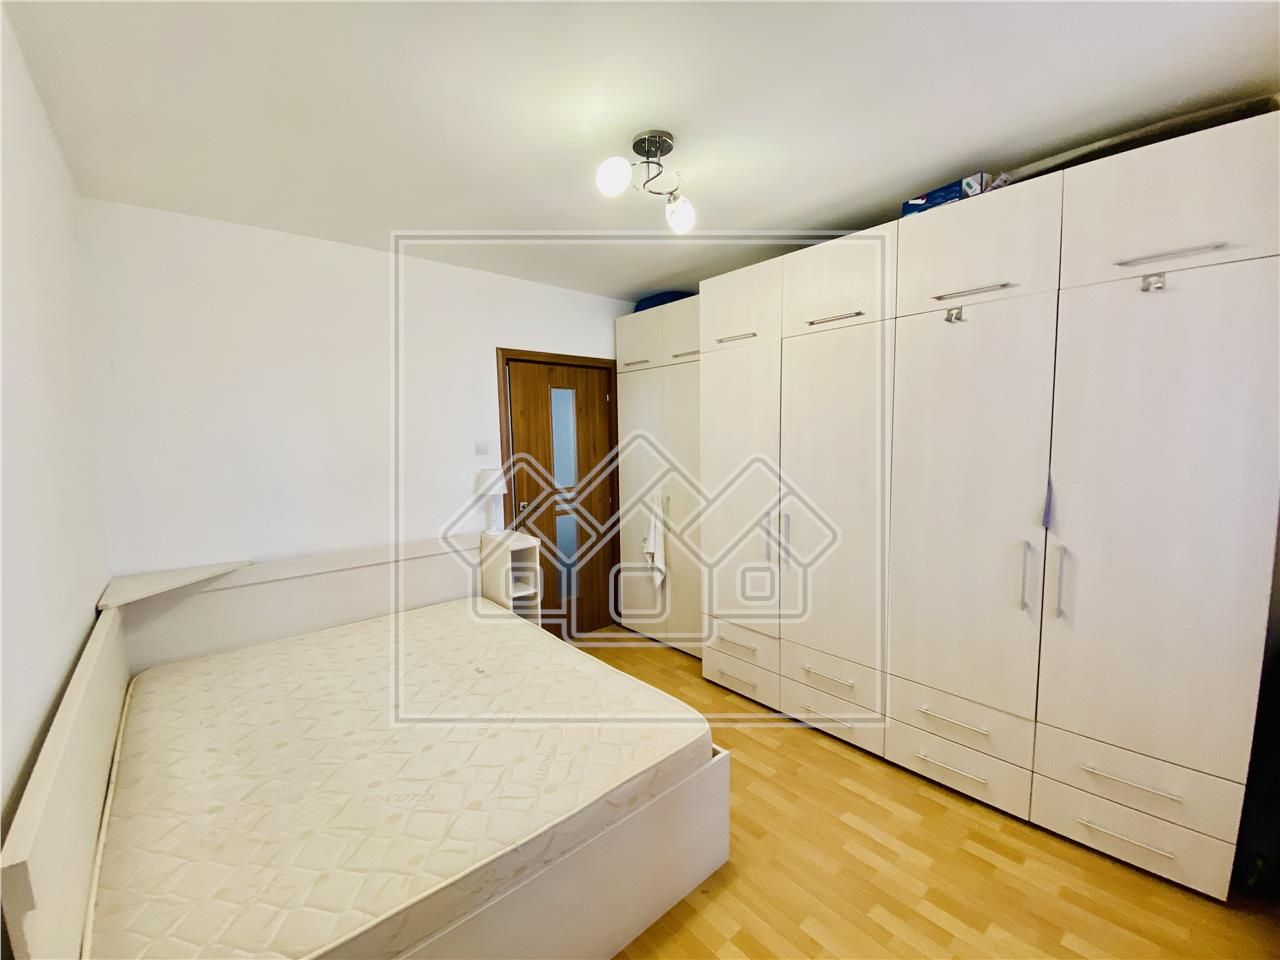 Wohnung zum Verkauf in Sibiu ? freistehend ? 2 Zimmer, 2 Balkone und K